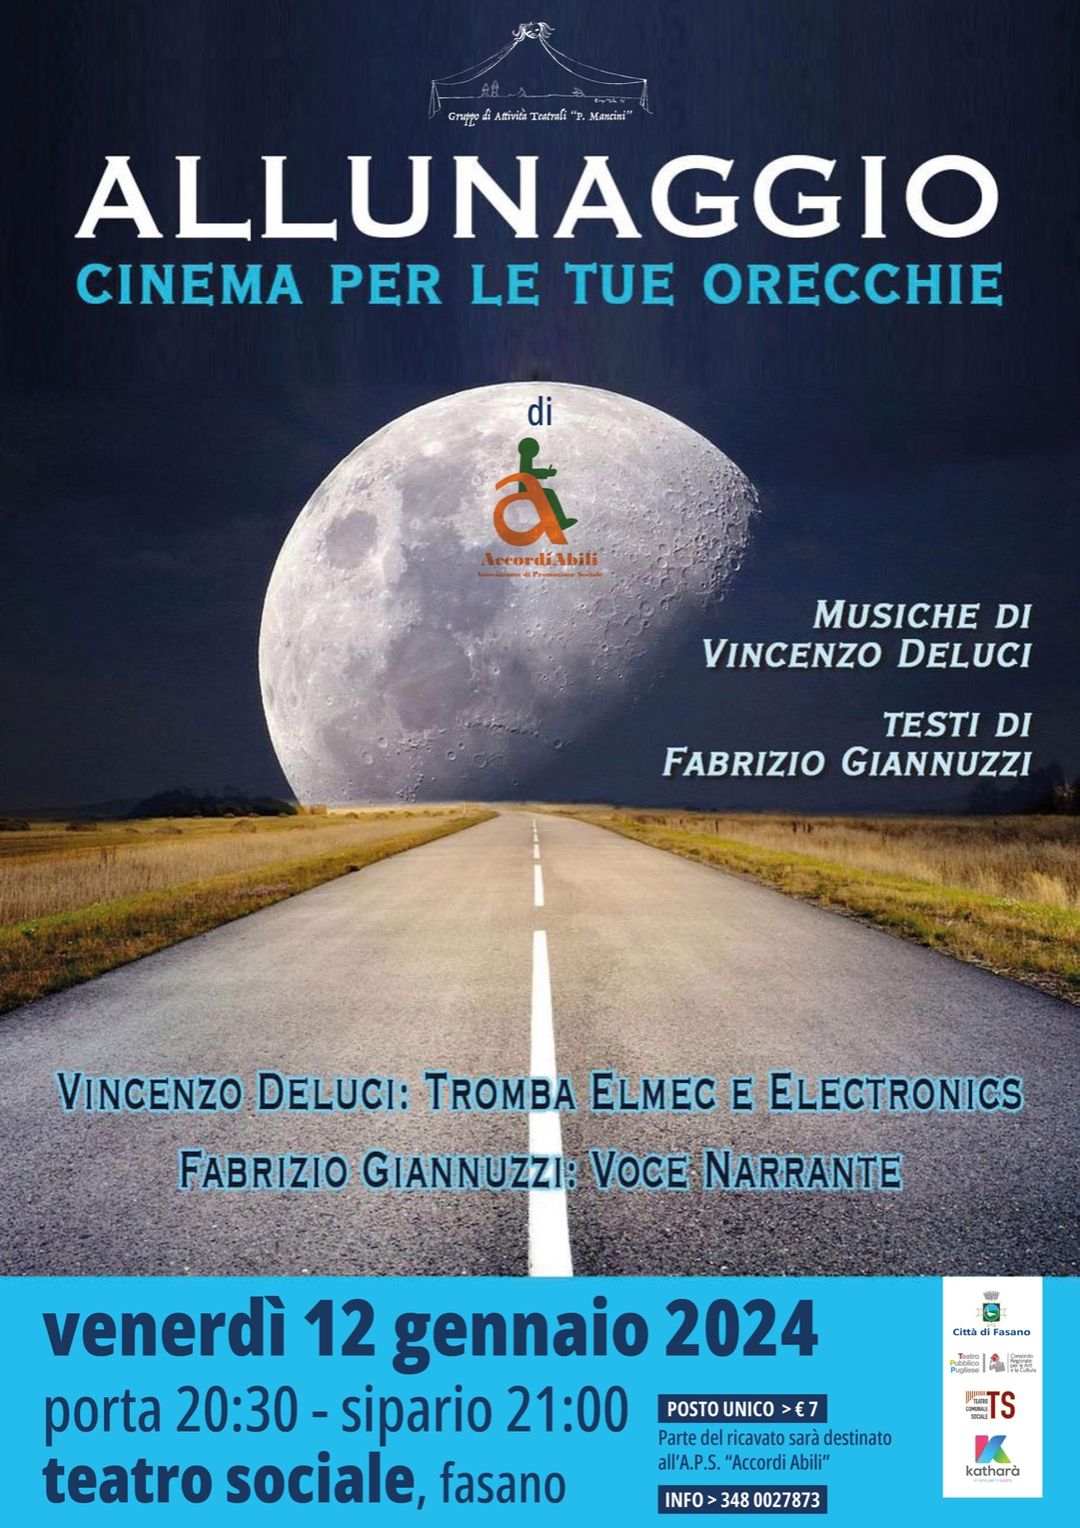 Dal Teatro Sociale di Fasano alla Luna, un filo diretto teso dalla voce di Fabrizio Giannuzzi e dalla musica del maestro Vincenzo Deluci.